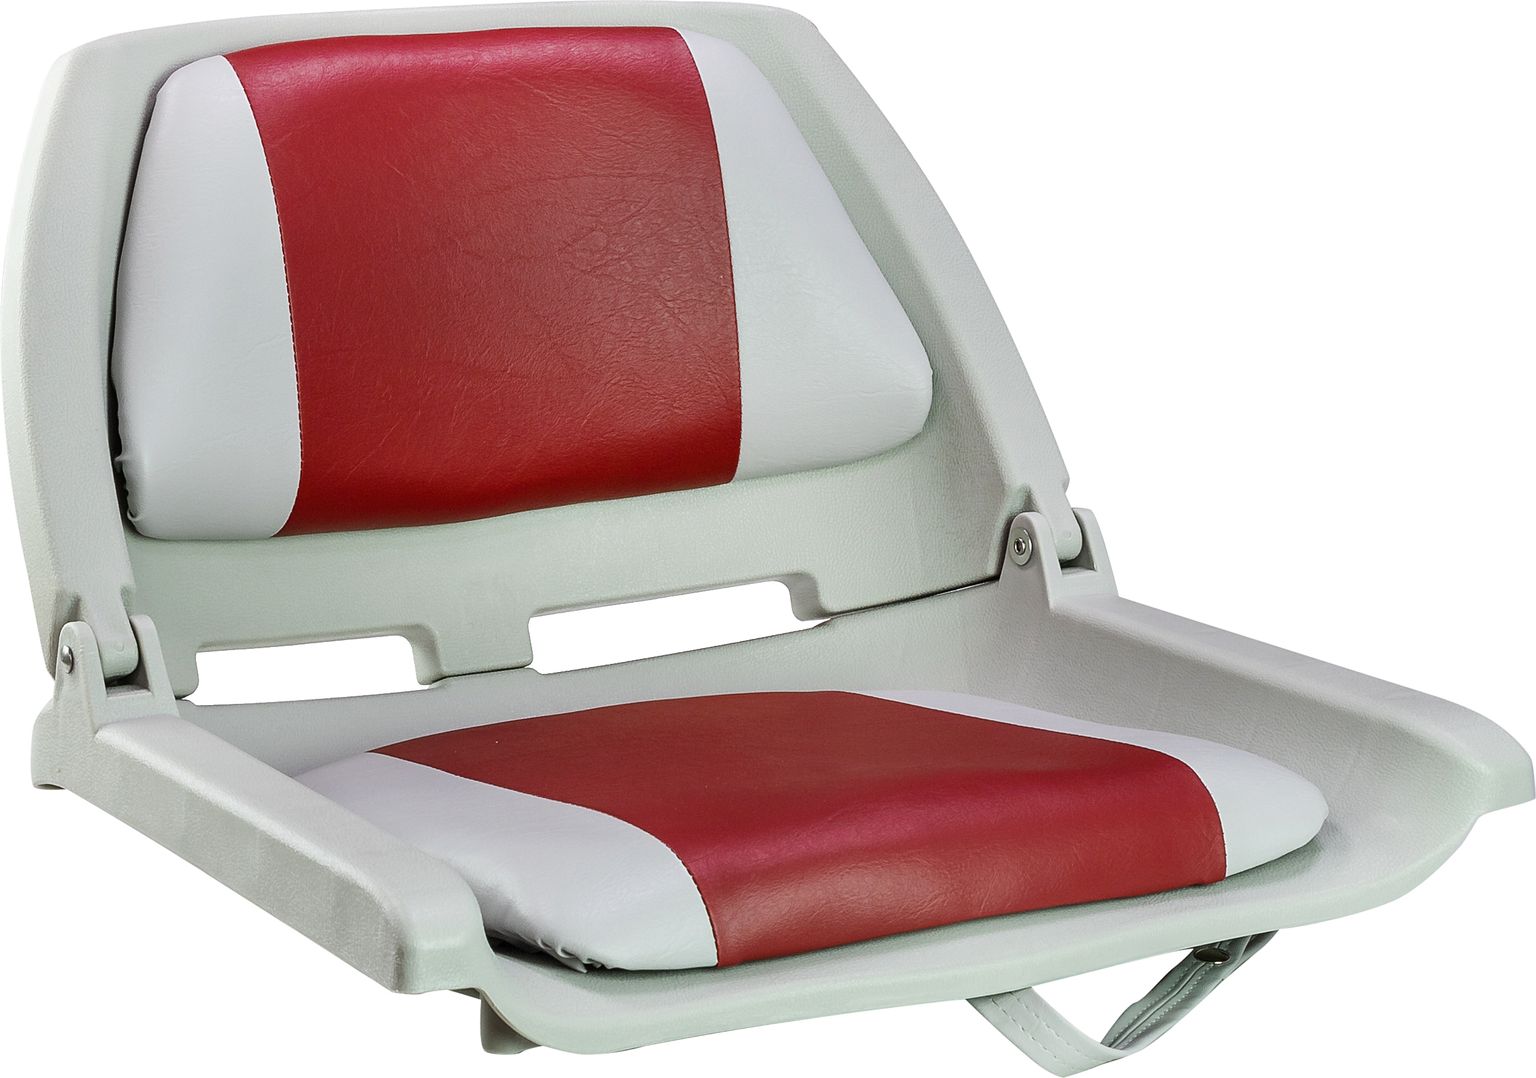 Кресло мягкое складное, обивка винил, цвет серый/красный, Marine Rocket 75109GR-MR кресло мягкое складное камуфляж осень marine rocket 75107max5 mr